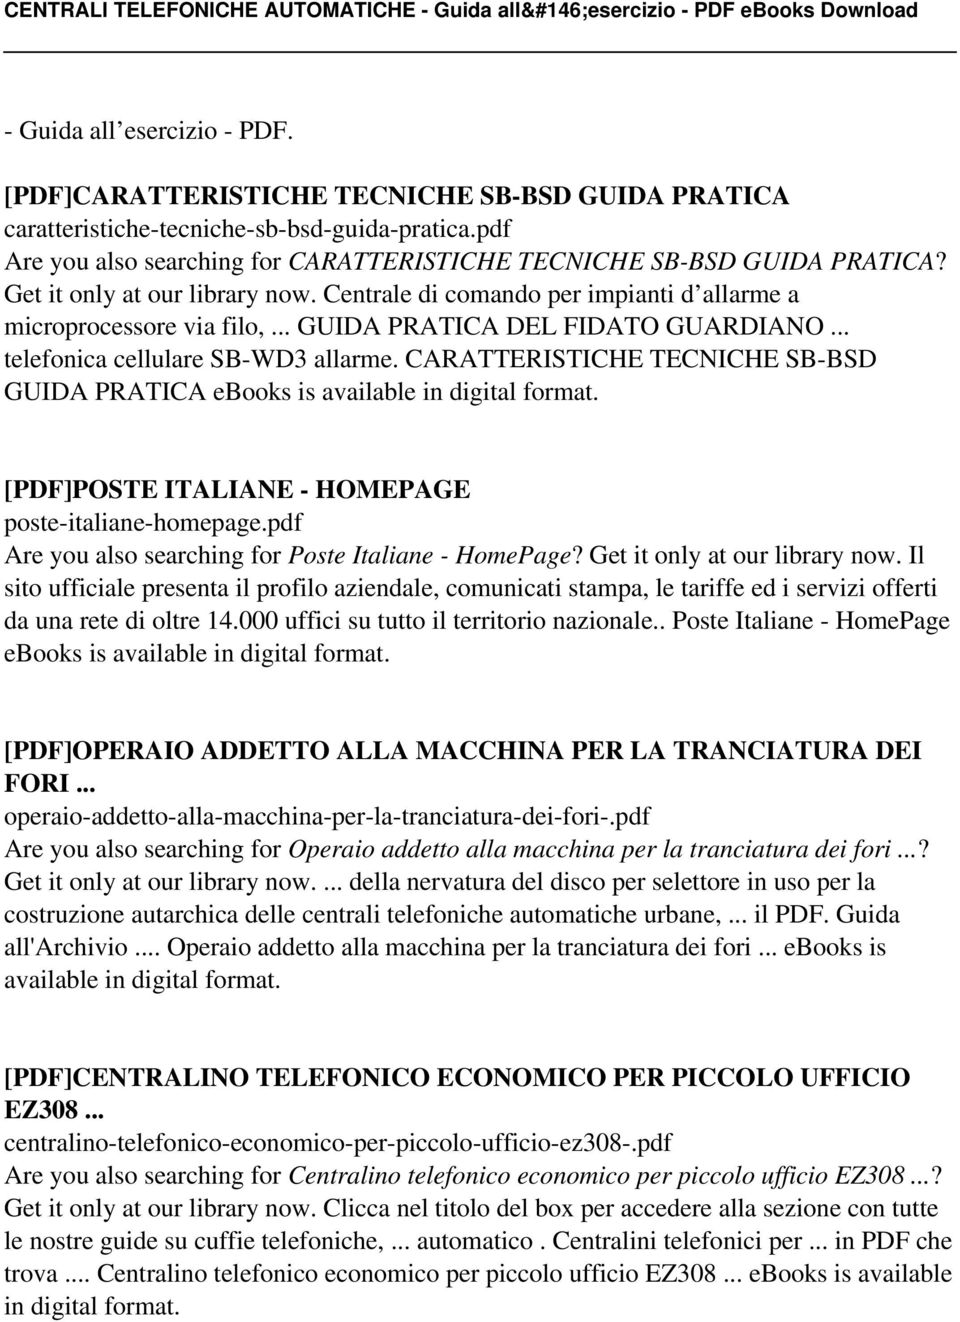 .. GUIDA PRATICA DEL FIDATO GUARDIANO... telefonica cellulare SB-WD3 allarme. CARATTERISTICHE TECNICHE SB-BSD GUIDA PRATICA ebooks is [PDF]POSTE ITALIANE - HOMEPAGE poste-italiane-homepage.